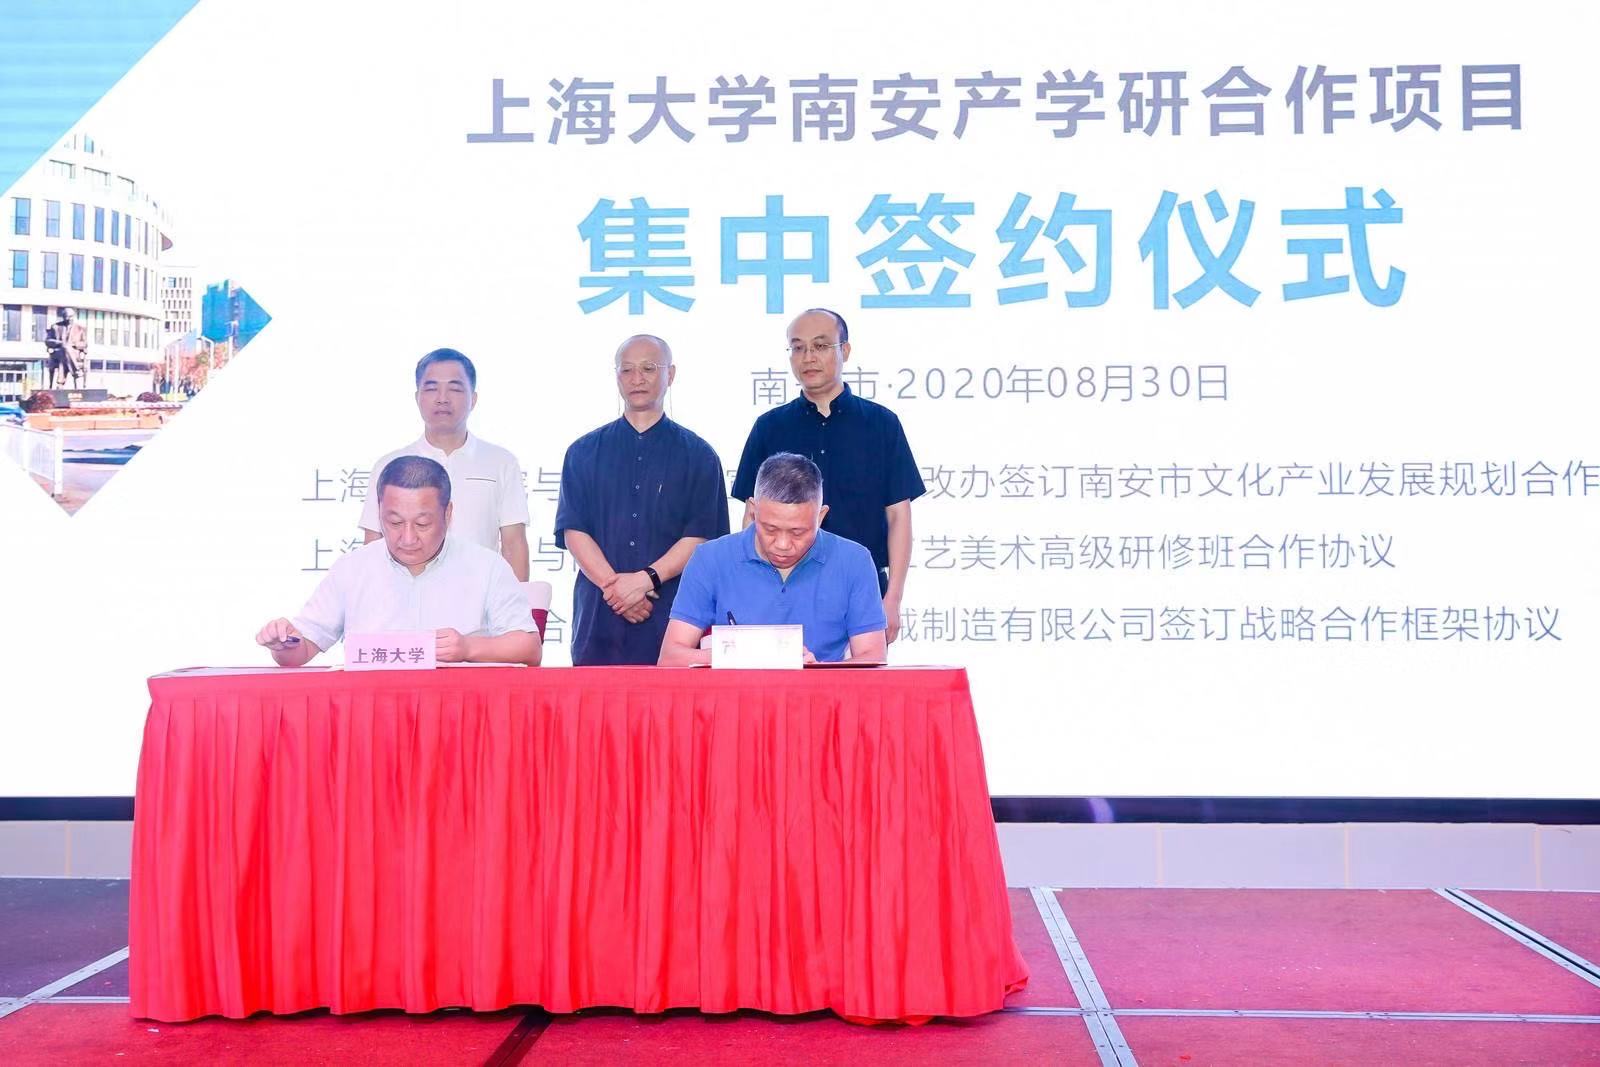 Célébrez chaleureusement la signature de l'accord de coopération stratégique entre l'Université de Shanghai et les machines SL et la cérémonie d'ouverture du centre de recherche sur les technologies d'ingénierie des équipements avancés de protection de l'environnement